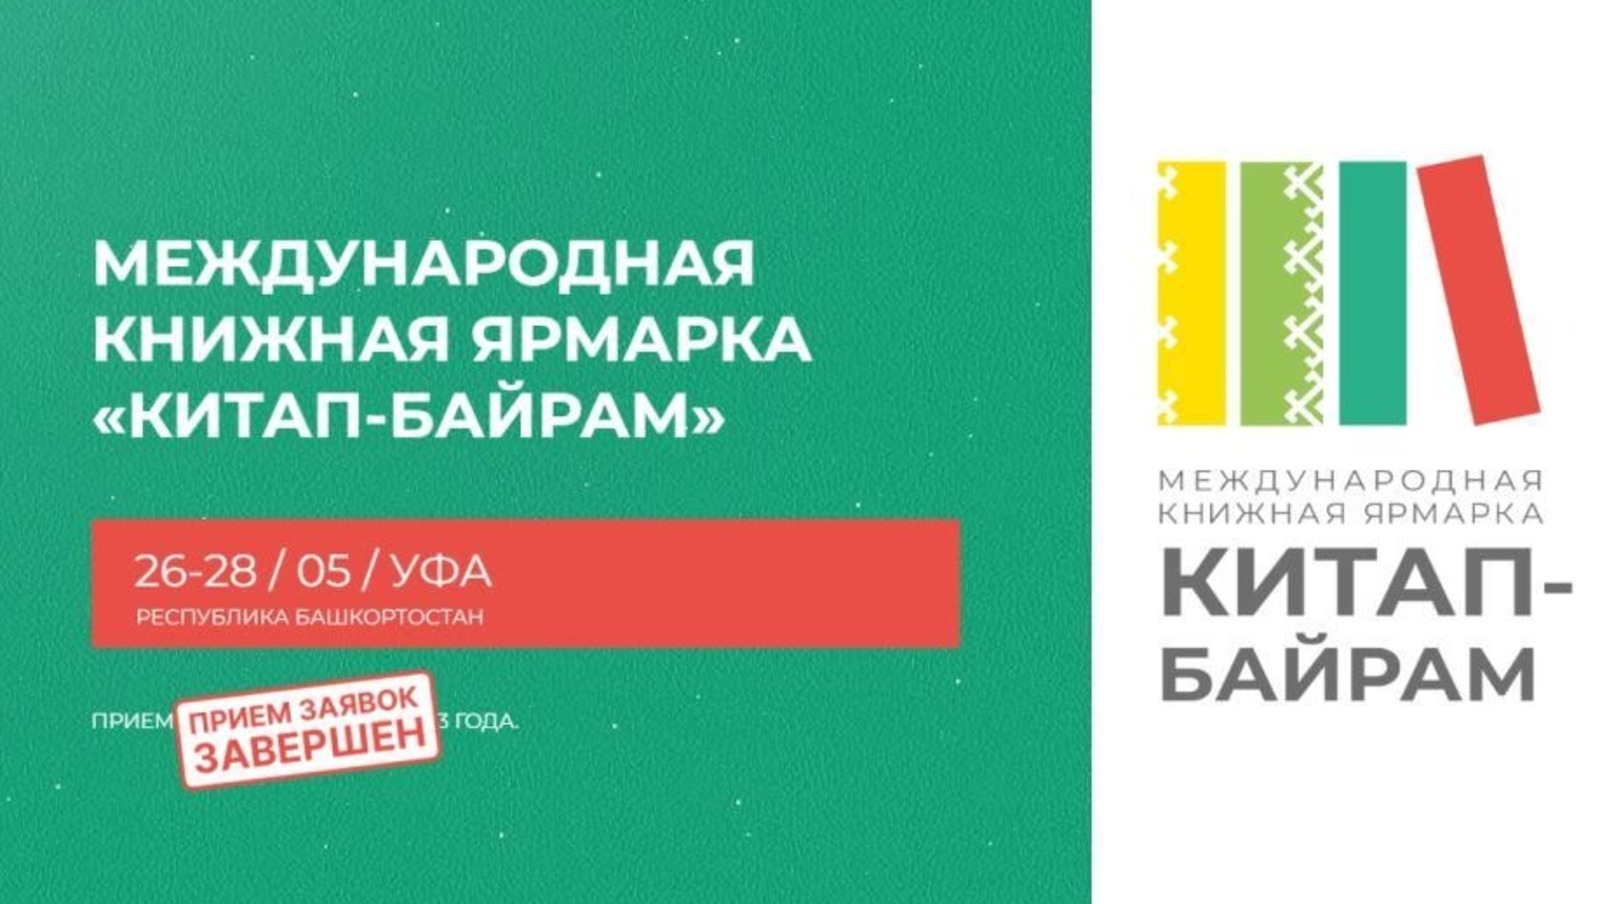 В ярмарке «Китап-байрам» примут участие более 140 издательств, книжных магазинов, частных букинистов